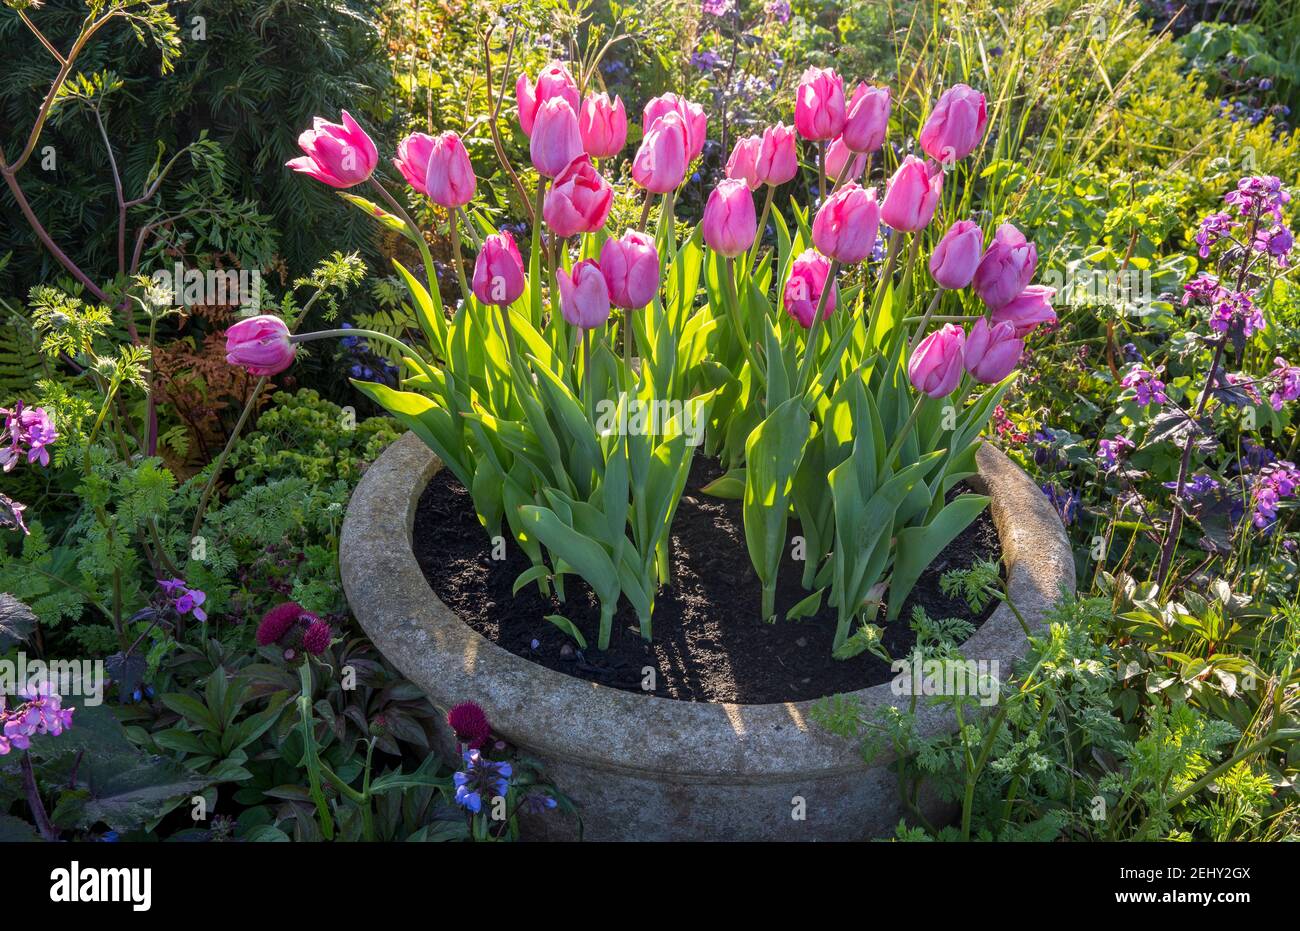 Cottage giardino - Tulip Caresse - tulipani rosa piante in un vecchio contenitore di pietra che pianta trogolo di fiore erbaceo misto Border - Primavera Inghilterra UK GB Foto Stock